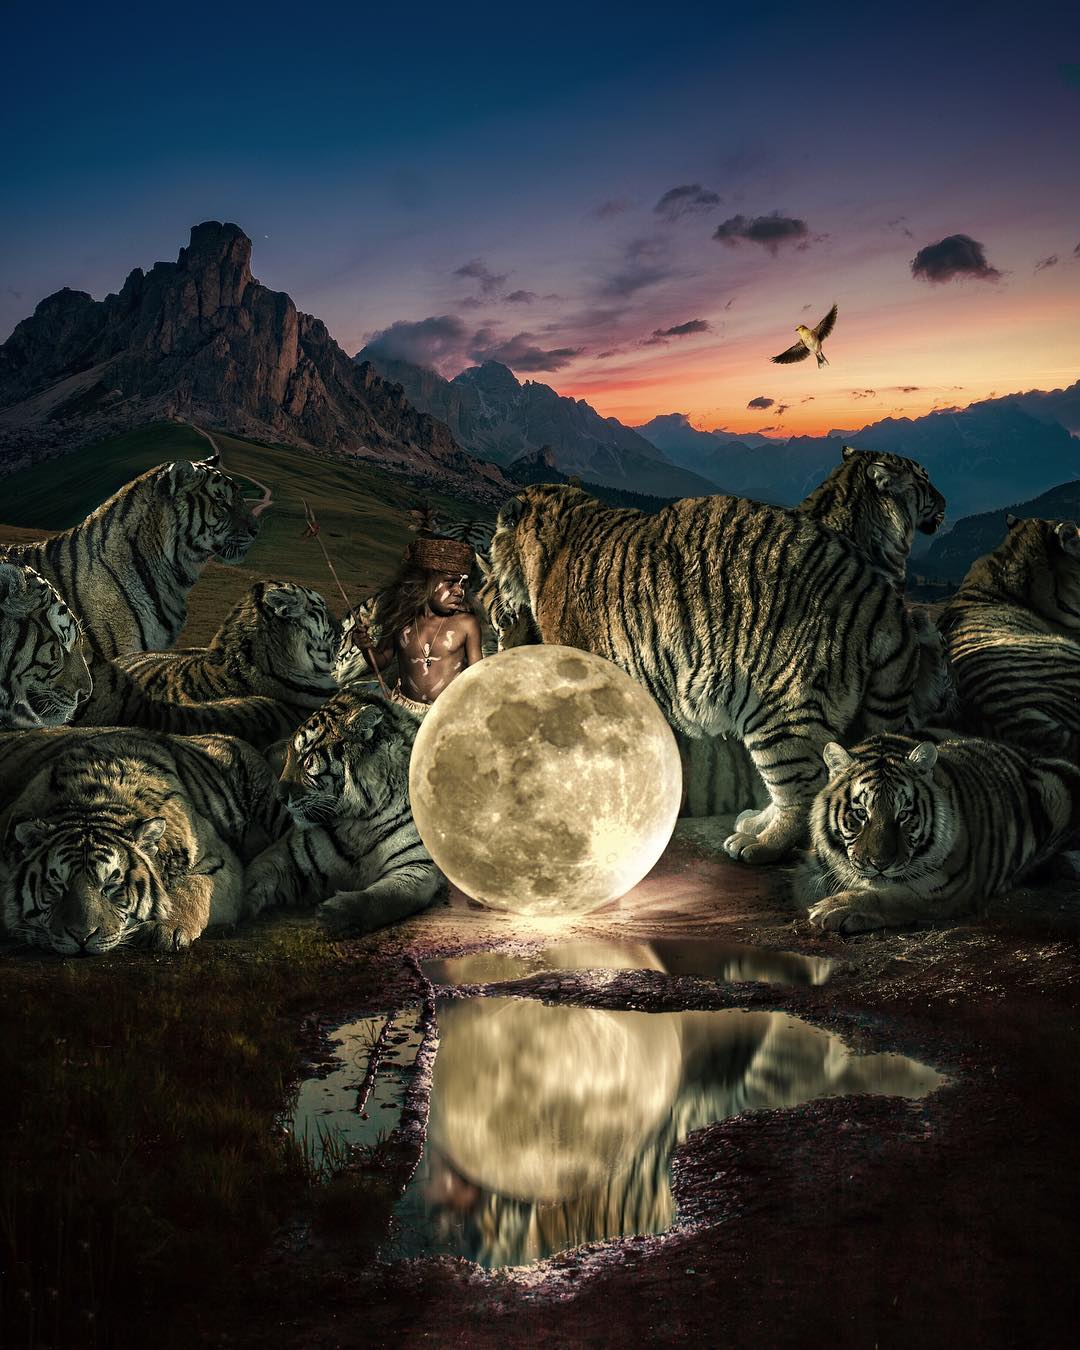 Фото Мальчик в окружении тигров стоит около полной луны, которая отражается в воде, by Marcel van Luit